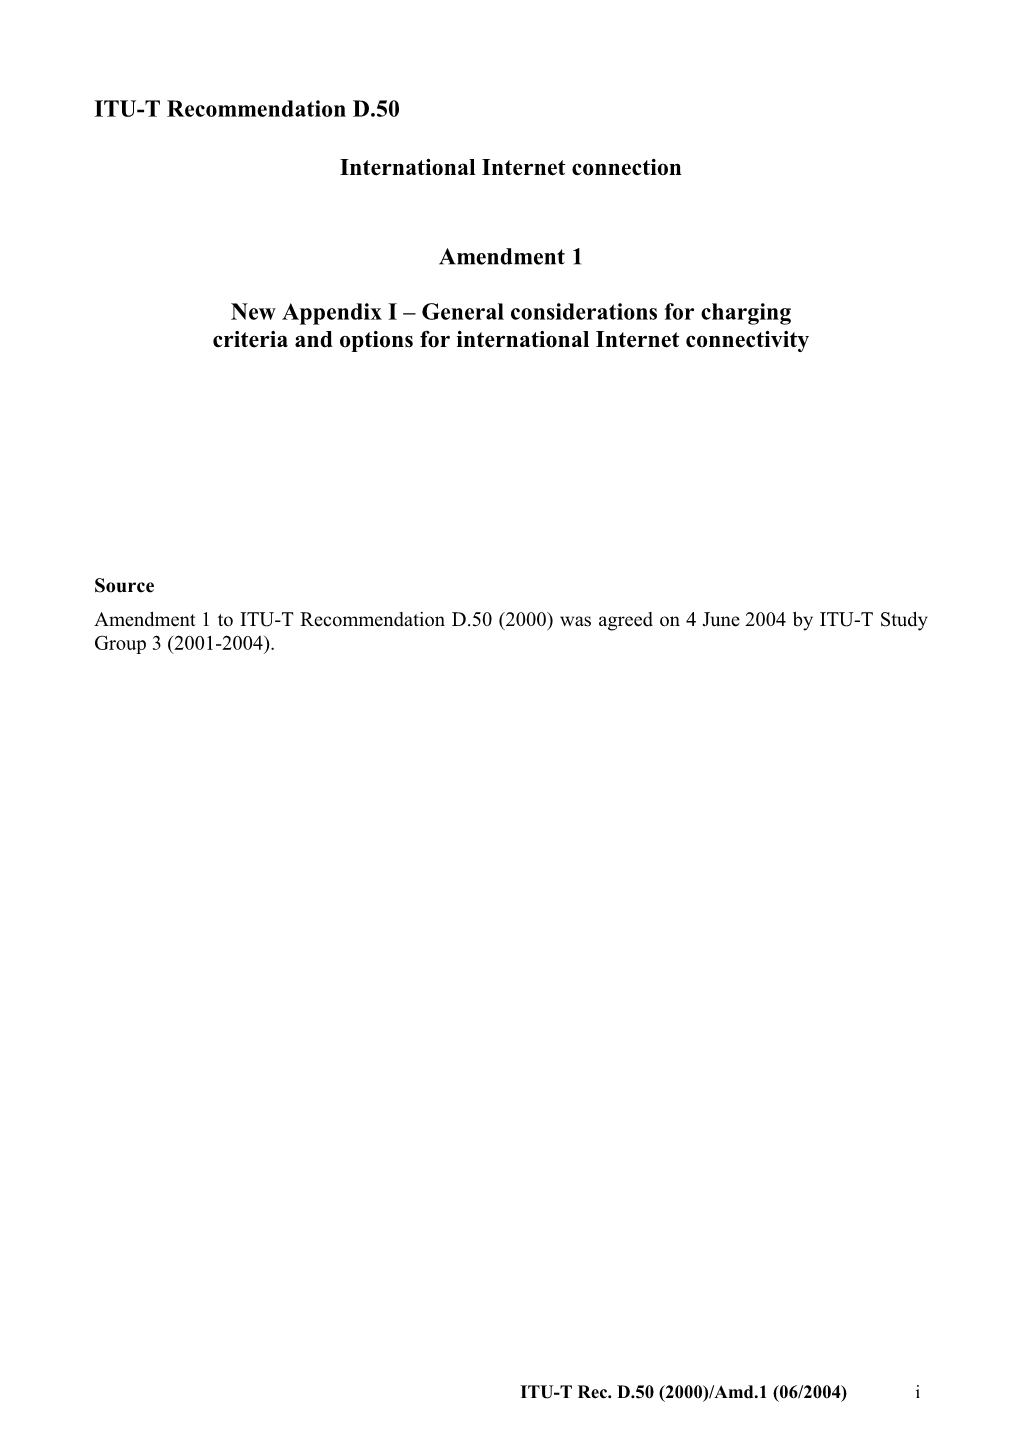 ITU-T Rec. D.50 Amendment 1 (06/2004) International Internet Connection Amendment 1: New